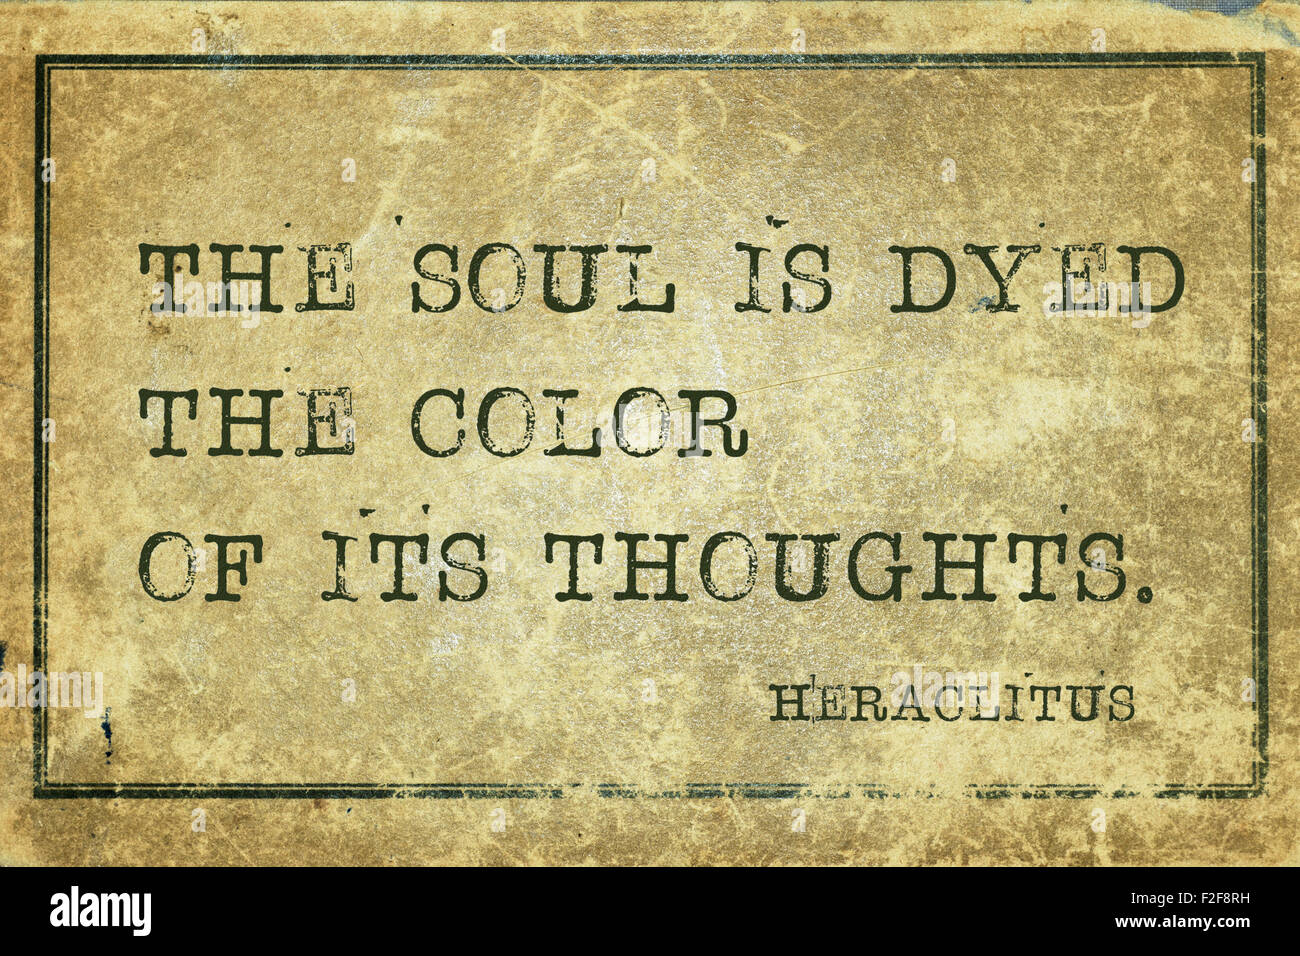 Die Seele ist die Farbe seiner Gedanken - gefärbt, der griechische Philosoph Heraclitus Zitat auf Grunge Vintage Karton gedruckt Stockfoto